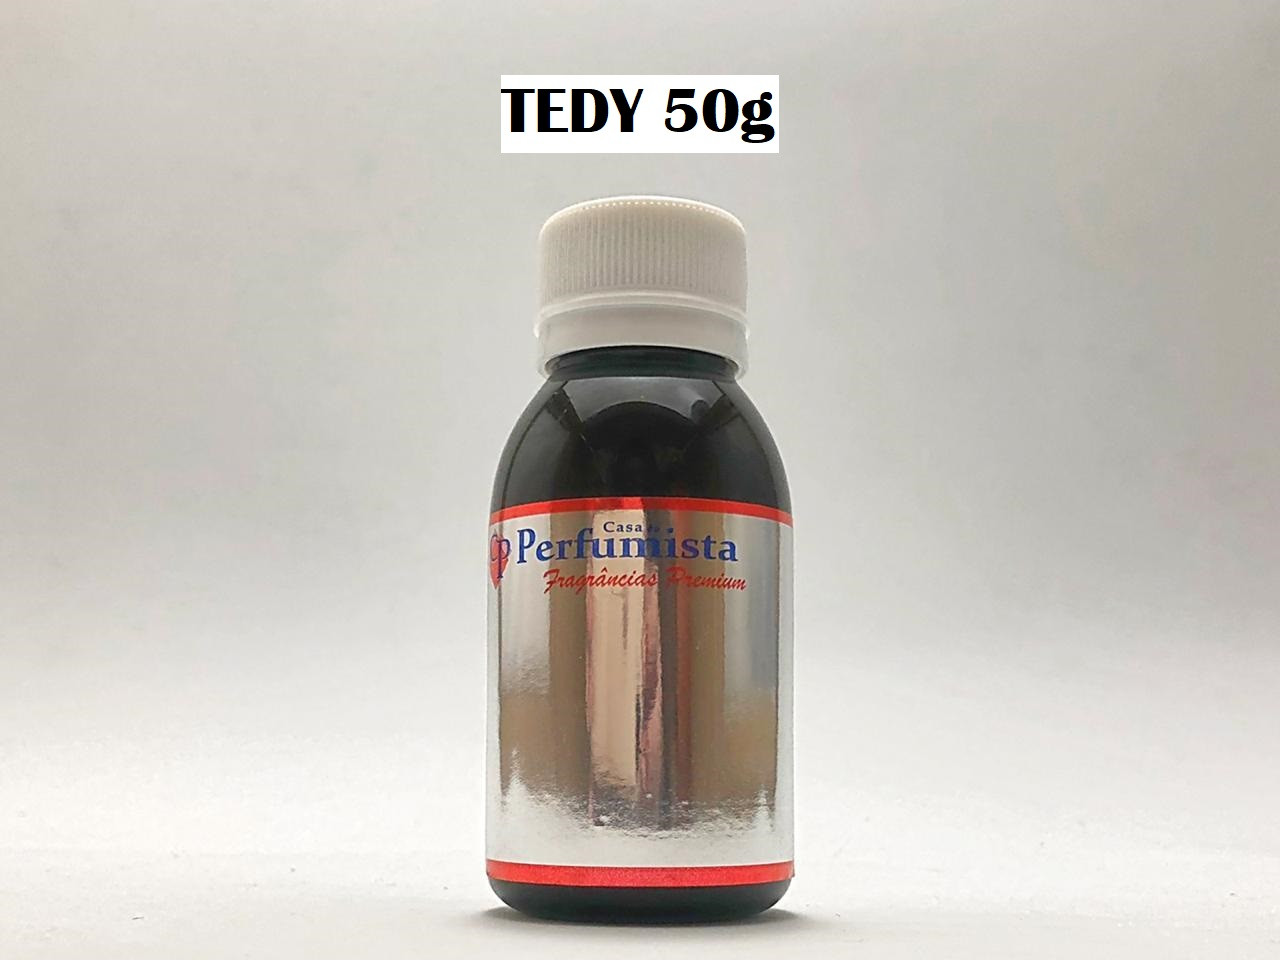 TEDY 50g - Inspiração: Lapidus Pour Homme Masculino